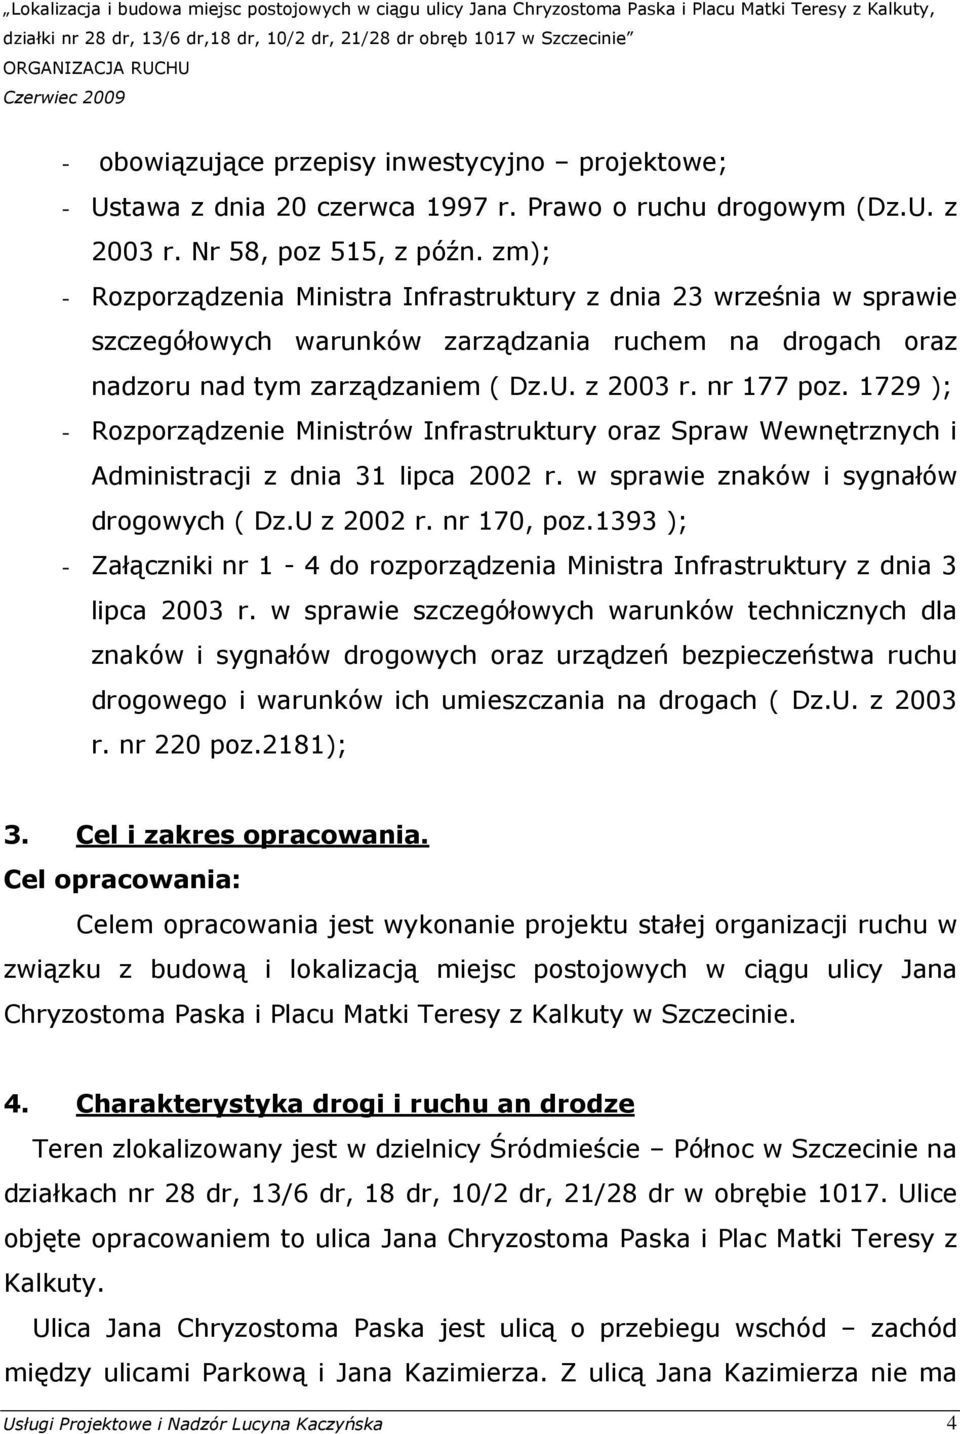 1729 ); - Rozporządzenie Ministrów Infrastruktury oraz Spraw Wewnętrznych i Administracji z dnia 31 lipca 2002 r. w sprawie znaków i sygnałów drogowych ( Dz.U z 2002 r. nr 170, poz.